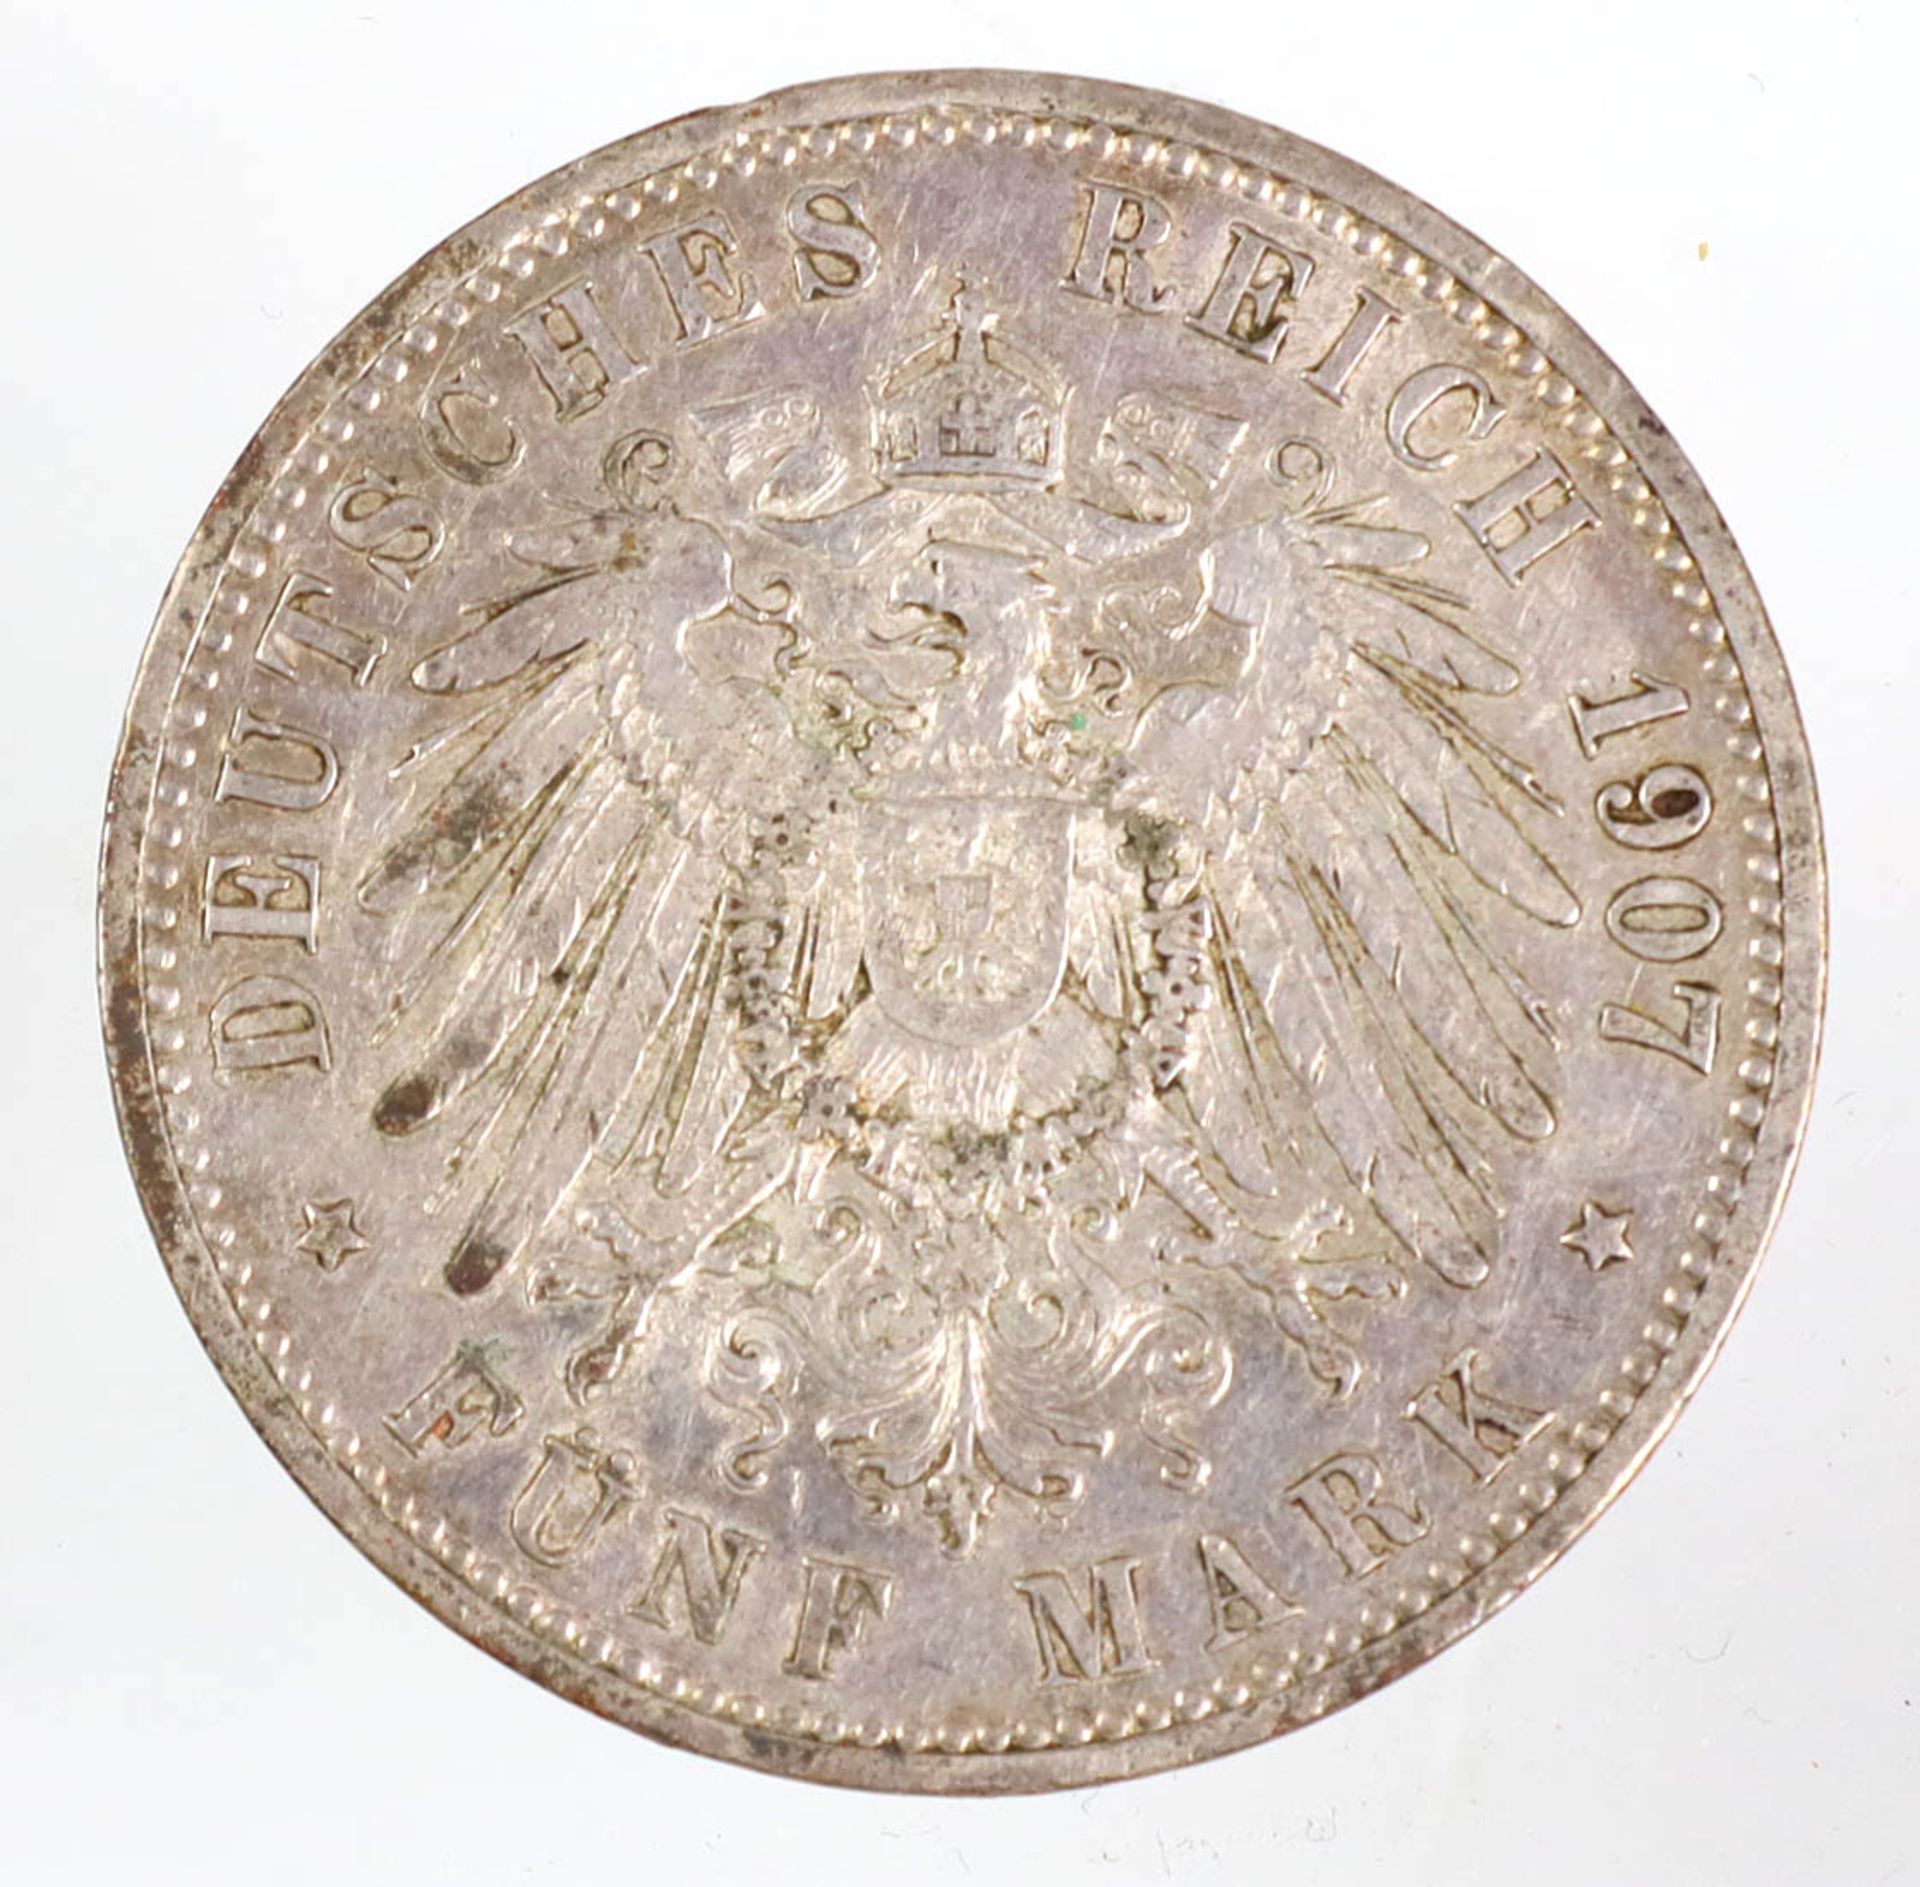 5 Mark Wilhelm II Preussen 1907 ASilbermünze Fünf Mark Deutsches Reich 1907, so um g - Bild 2 aus 2